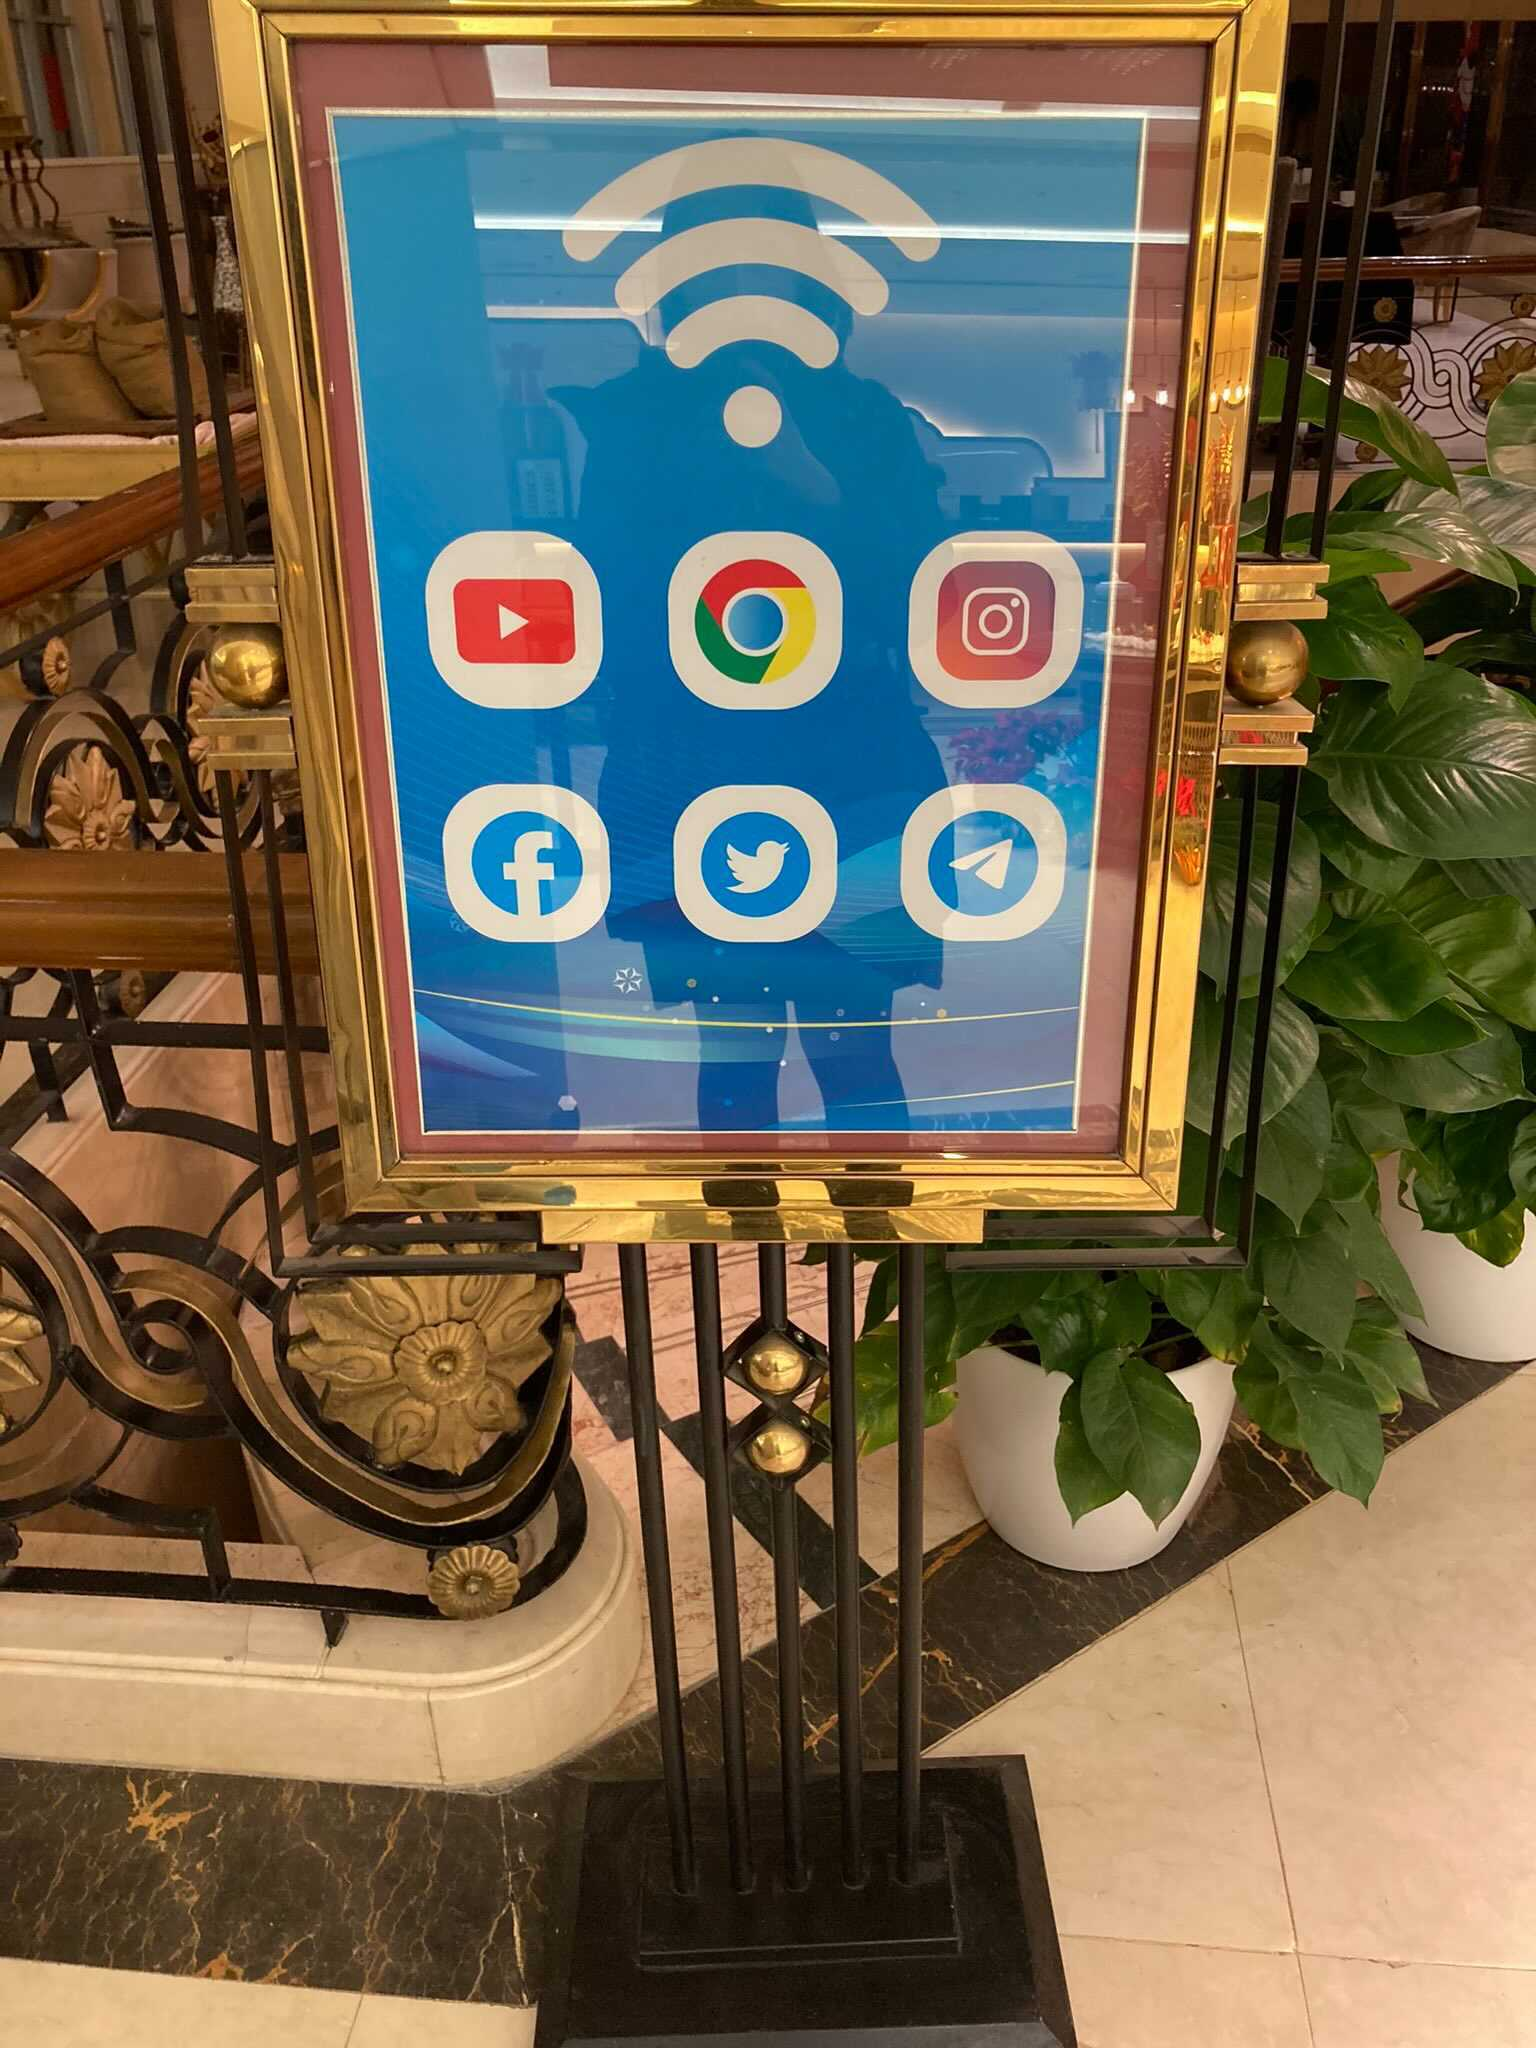 北京冬奥接待大堂Wifi标志下惊见6个“图标” – 中国小粉红说是黄色网站